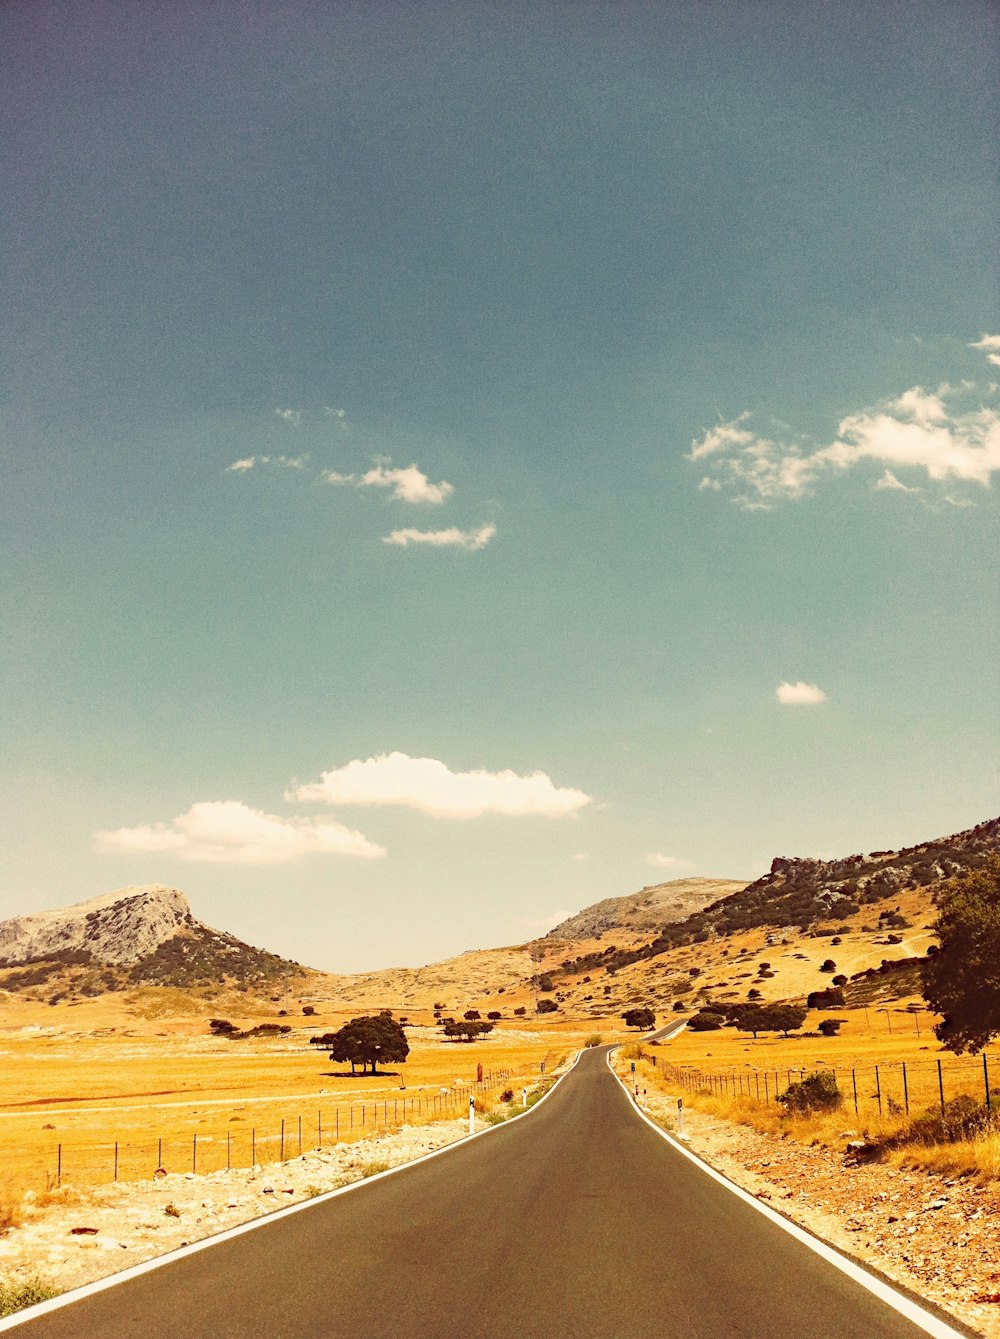 Une route vide au milieu du désert